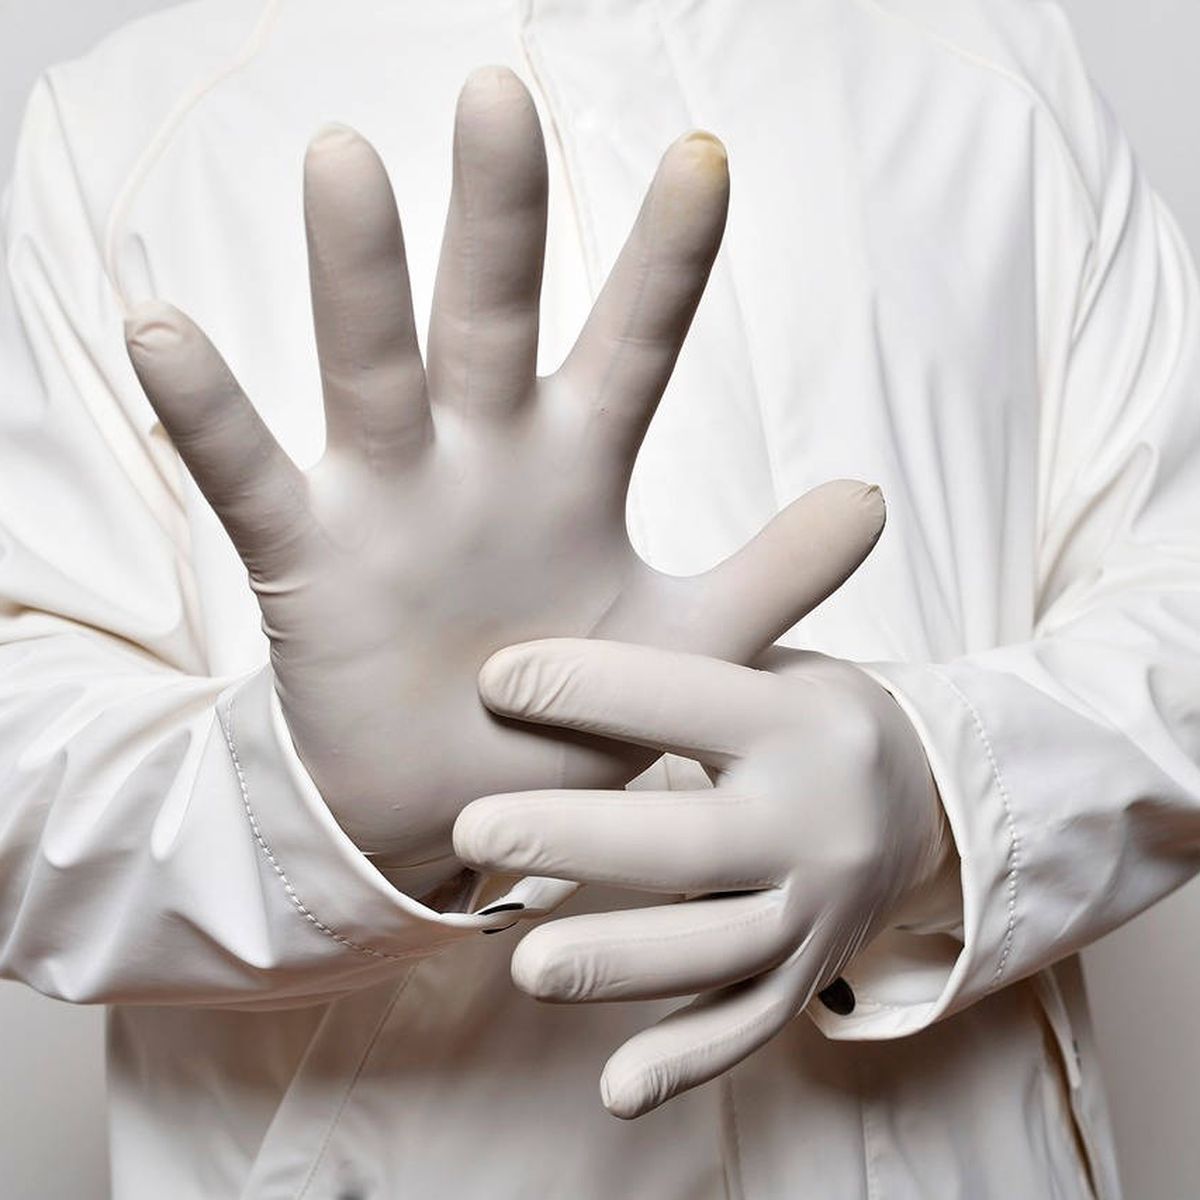 Los guantes nitrilo para proteger nuestras manos